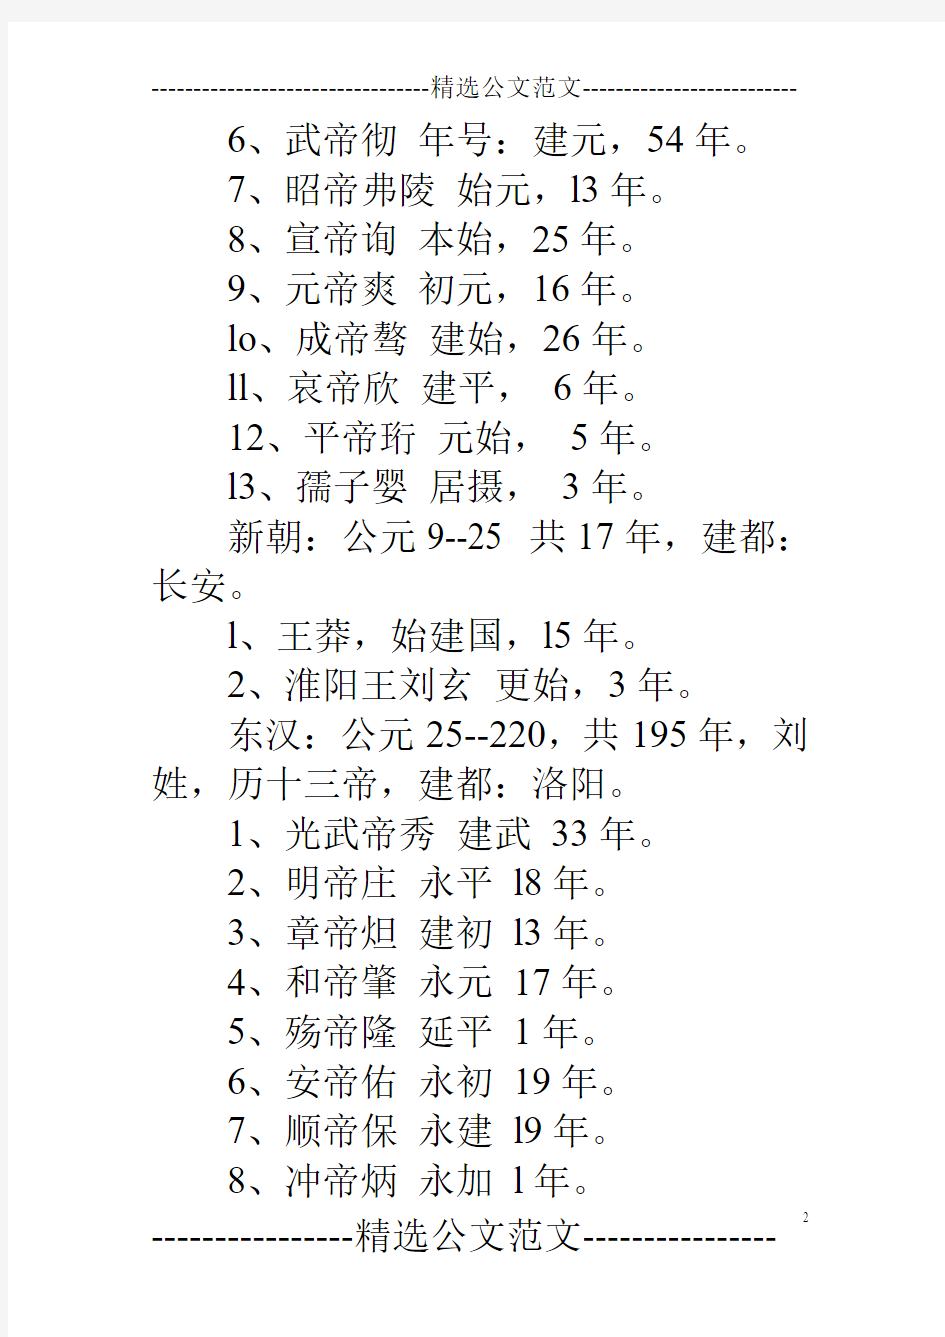 中国历史朝代详细年份顺序表